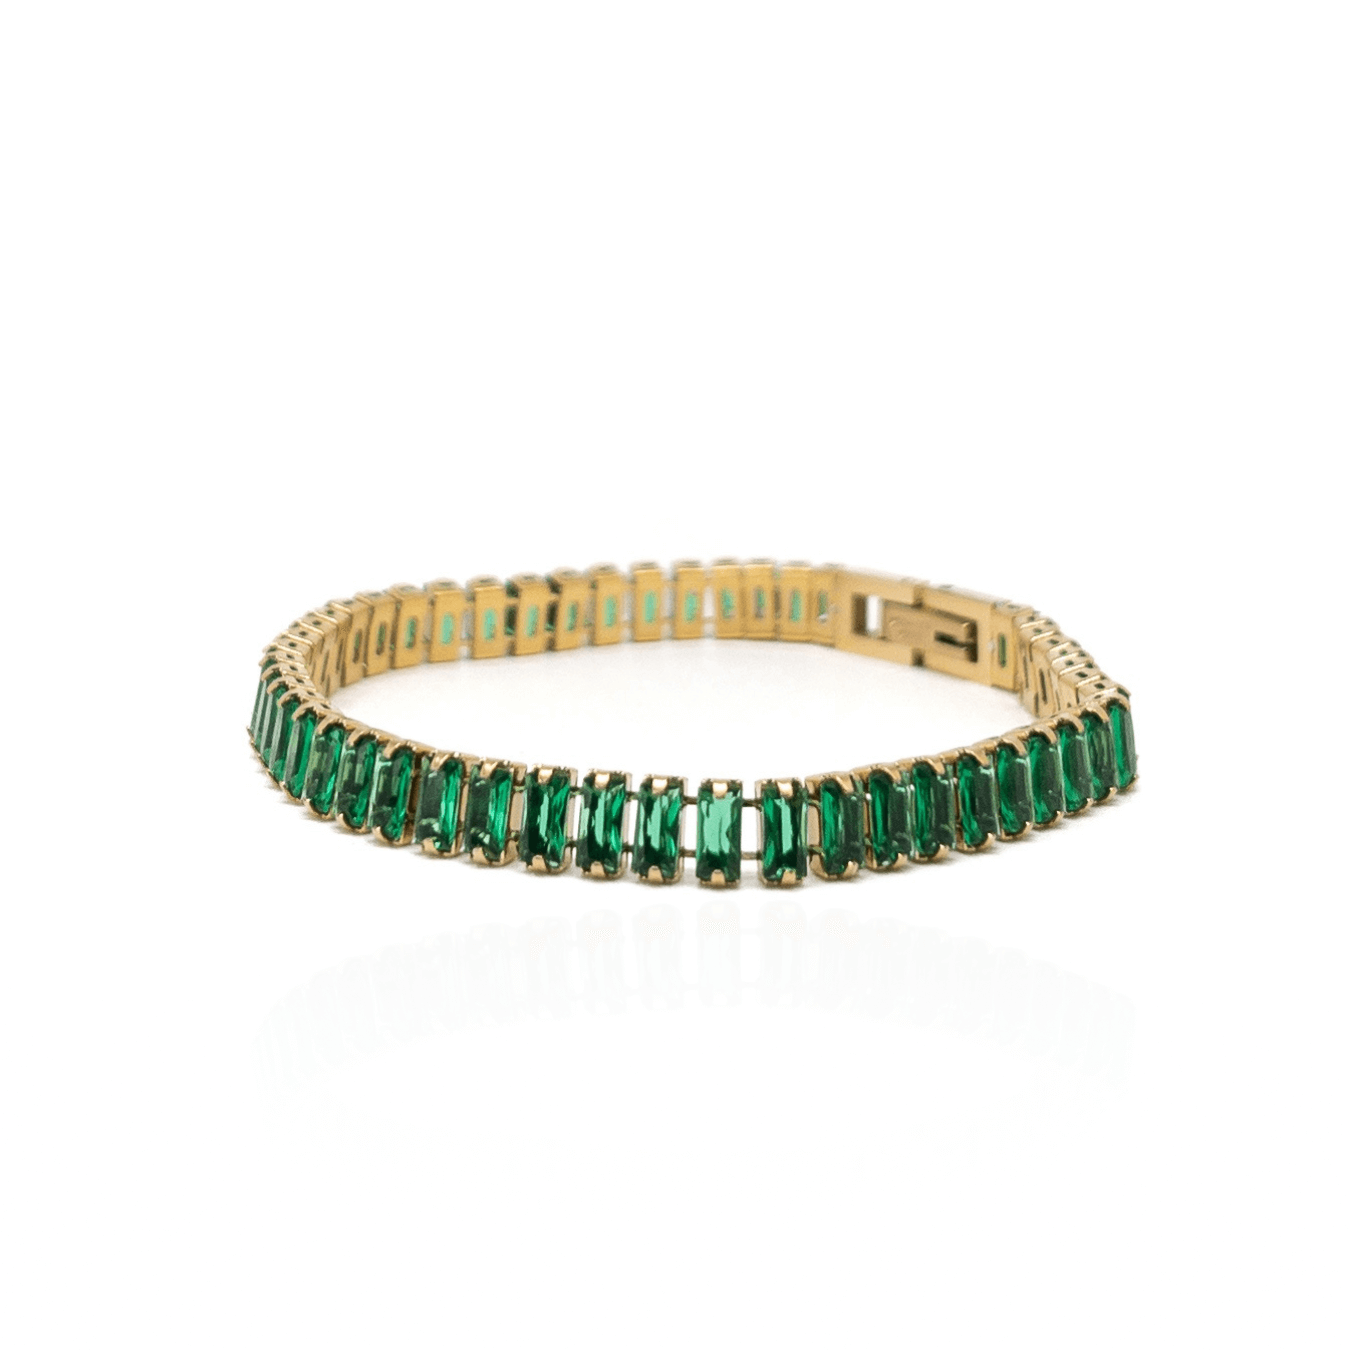 The Green Zircon Tennis Bracelet